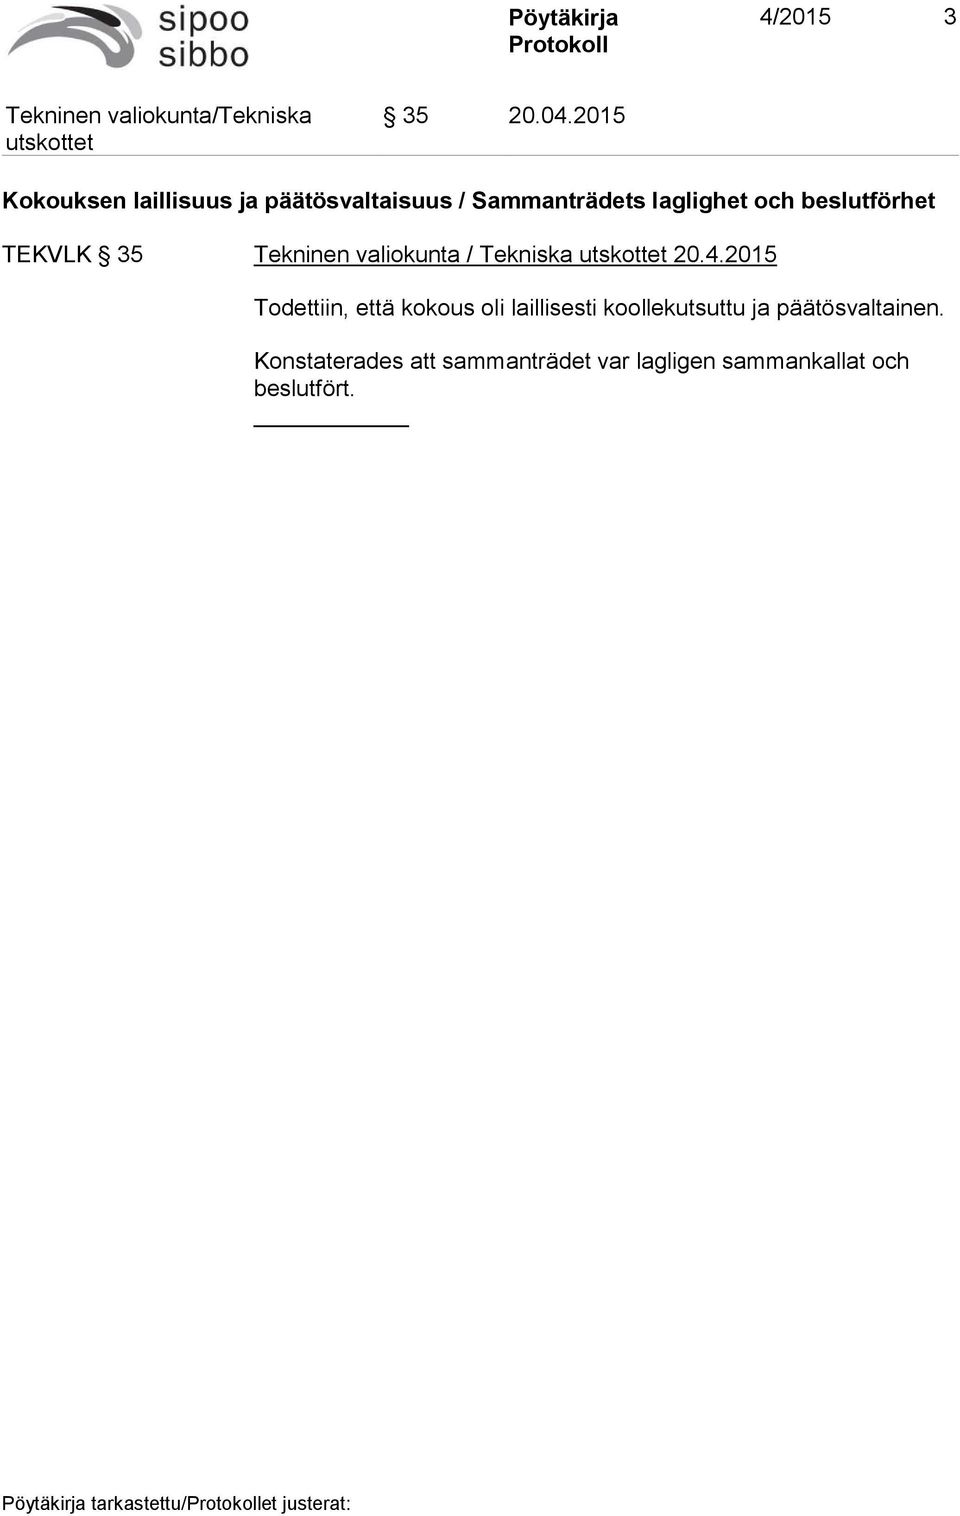 beslutförhet TEKVLK 35 Tekninen valiokunta / Tekniska 20.4.